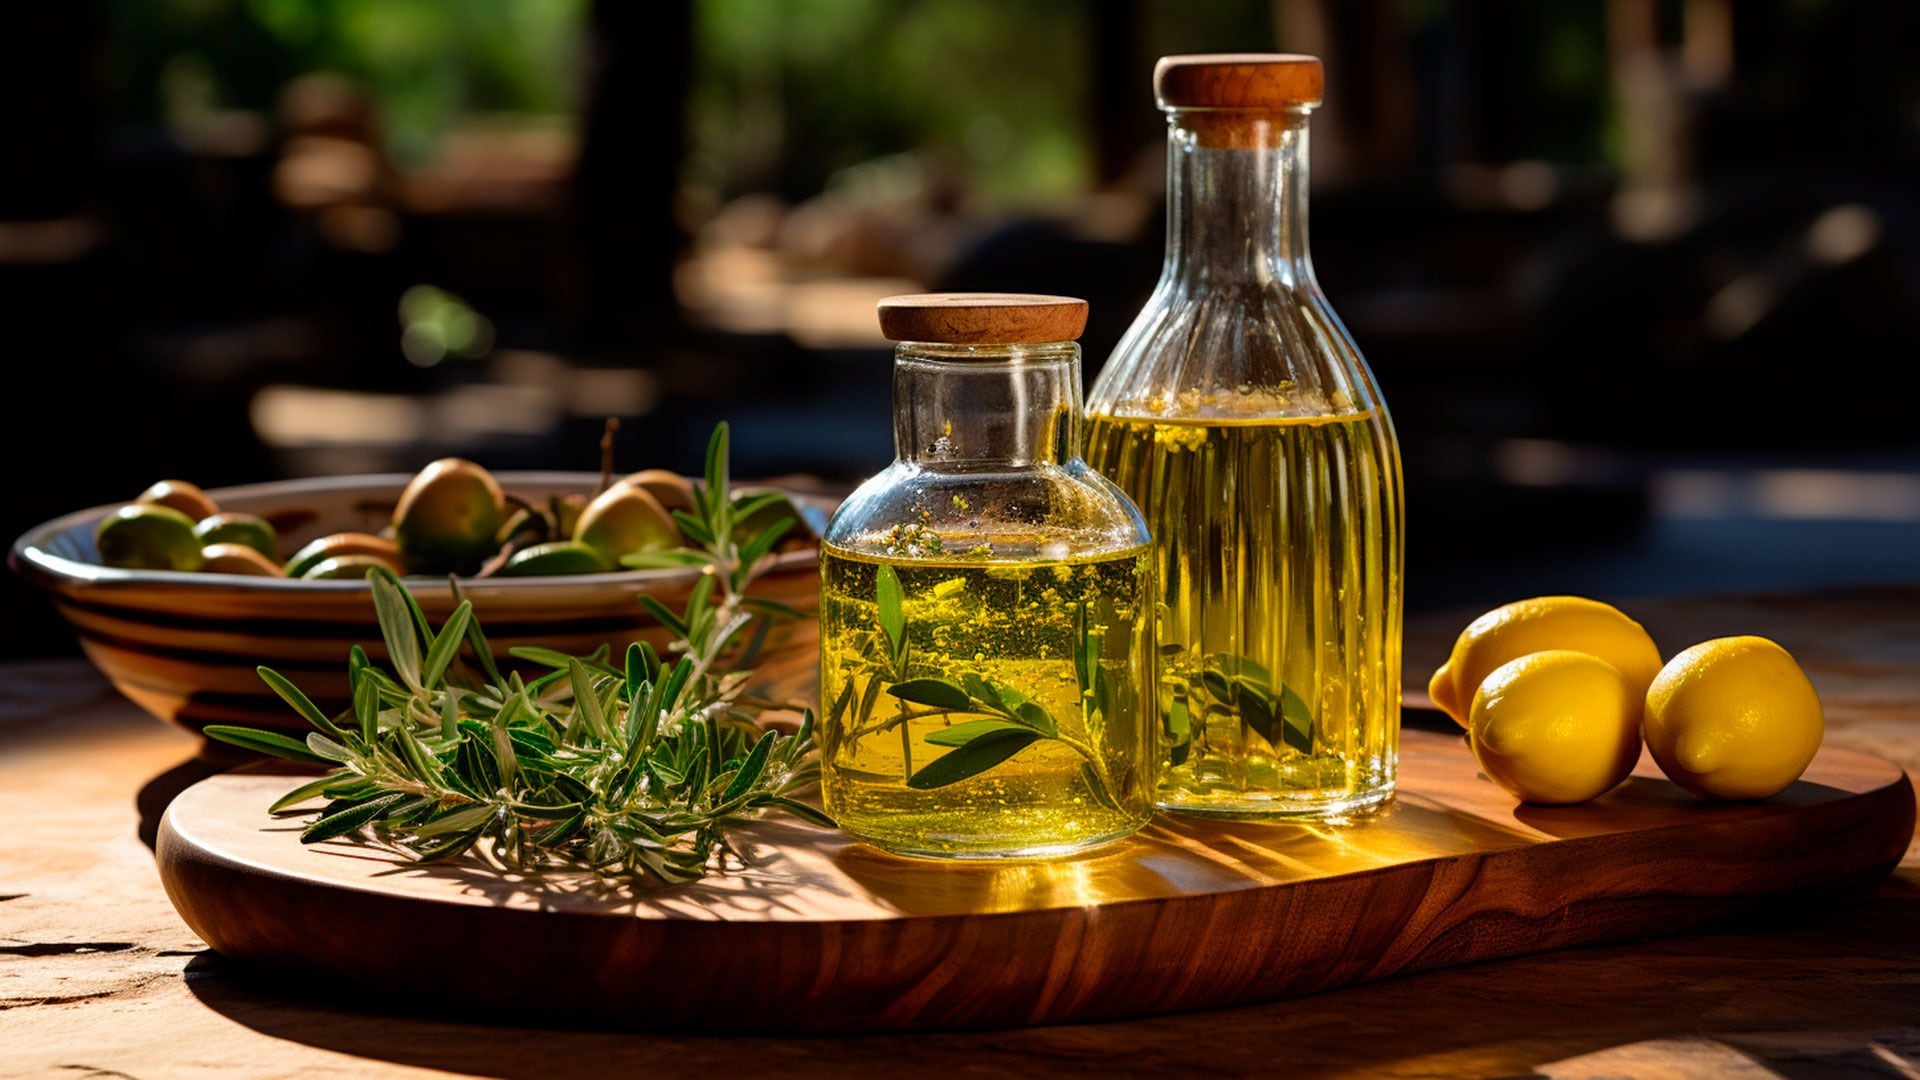 Los especialistas aconsejan usar aceite de oliva en lugar de grasas trans para cocinar (Imagen ilustrativa Infobae)